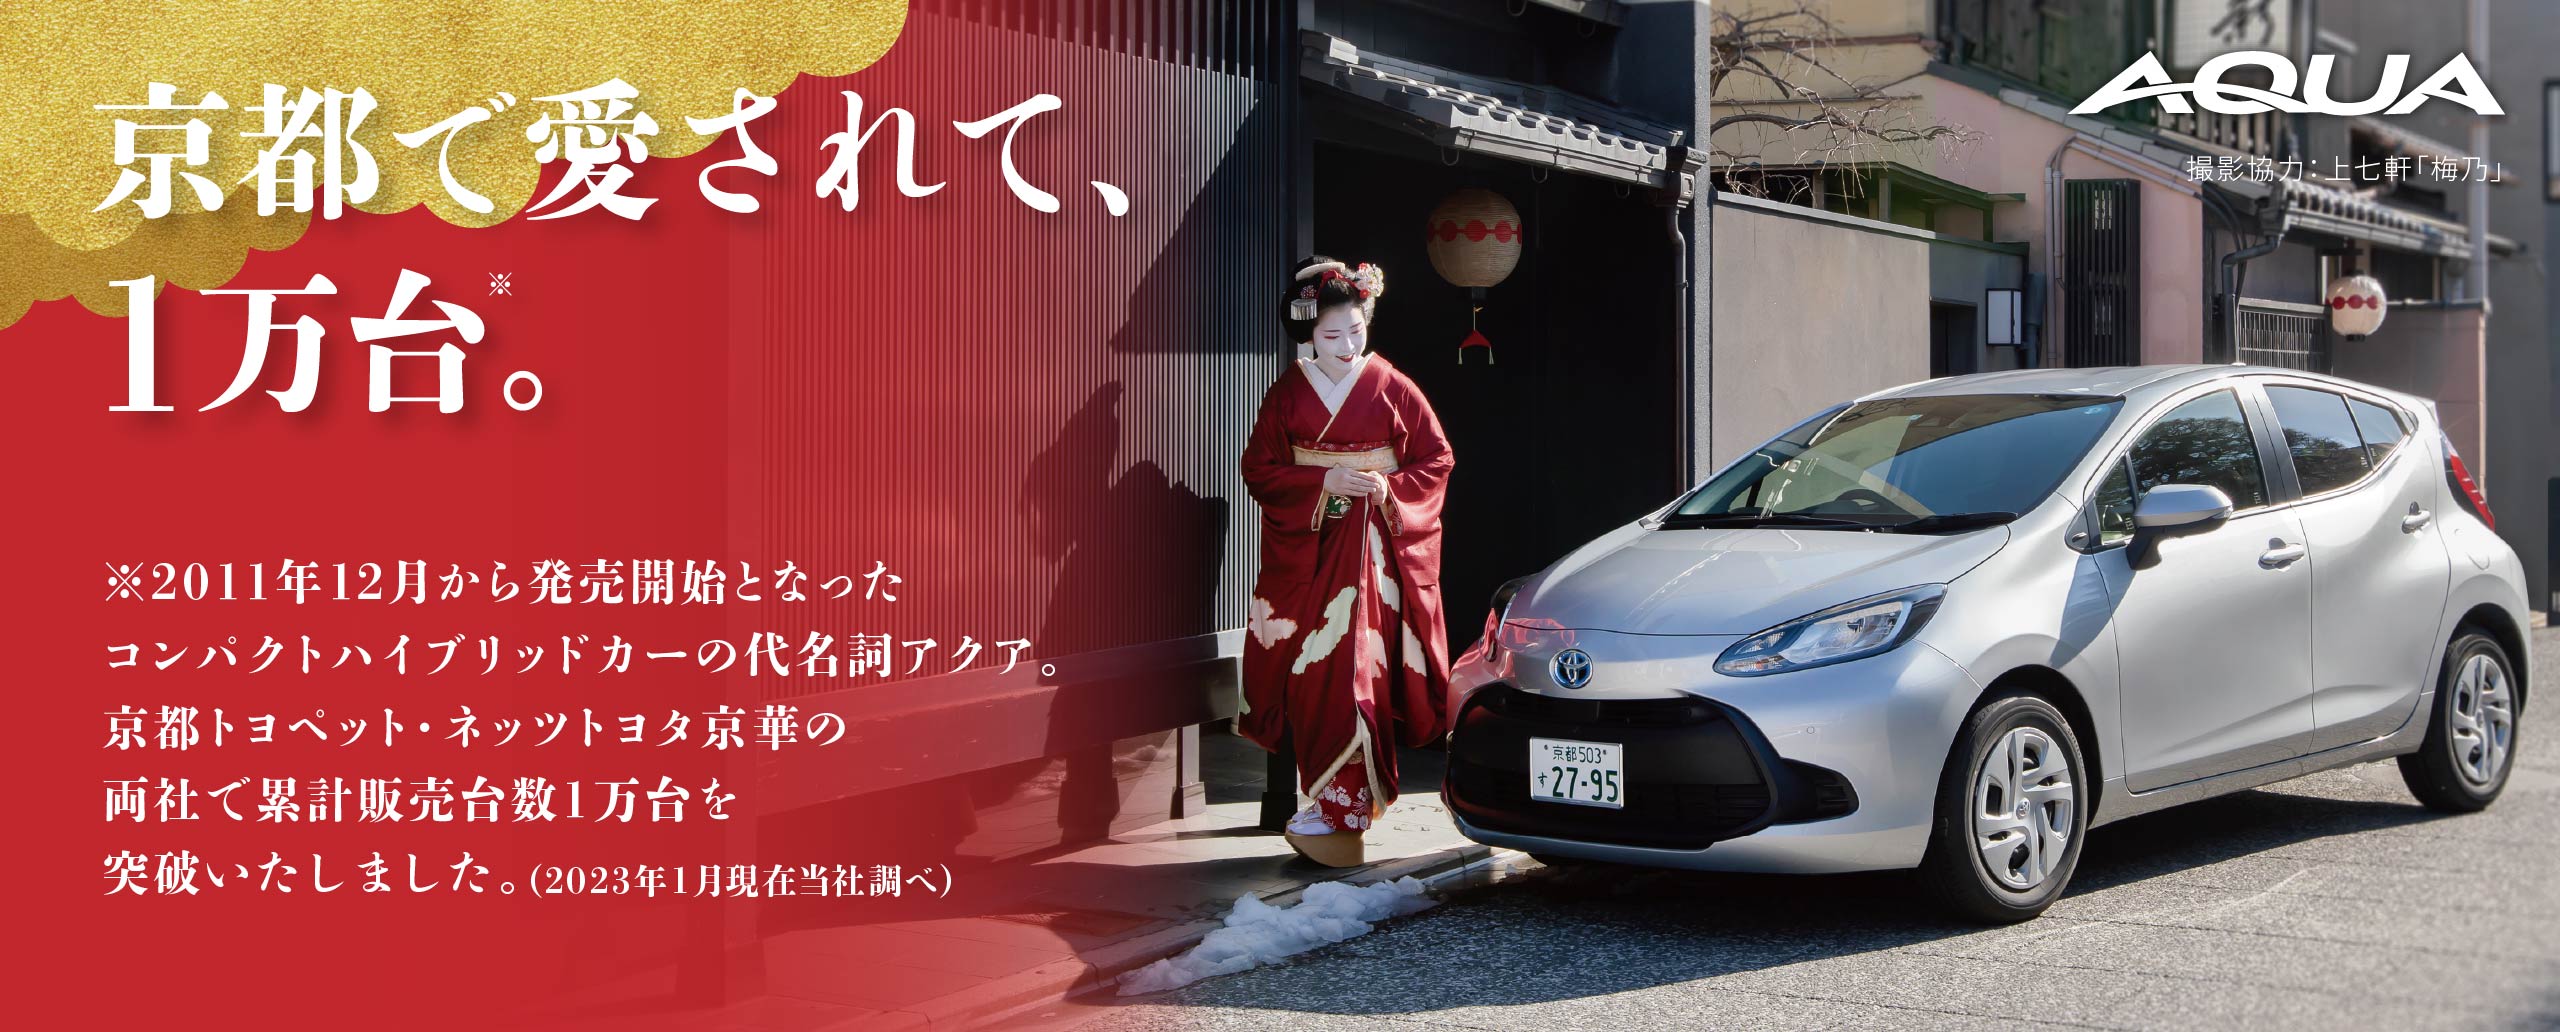 京都で愛されて、1万台。2011年12月から販売開始となったコンパクトハイブリットカーの代名詞アクア。京都トヨペット・ネッツトヨタ京華の両社で累計販売数1万台を突破いたしました。